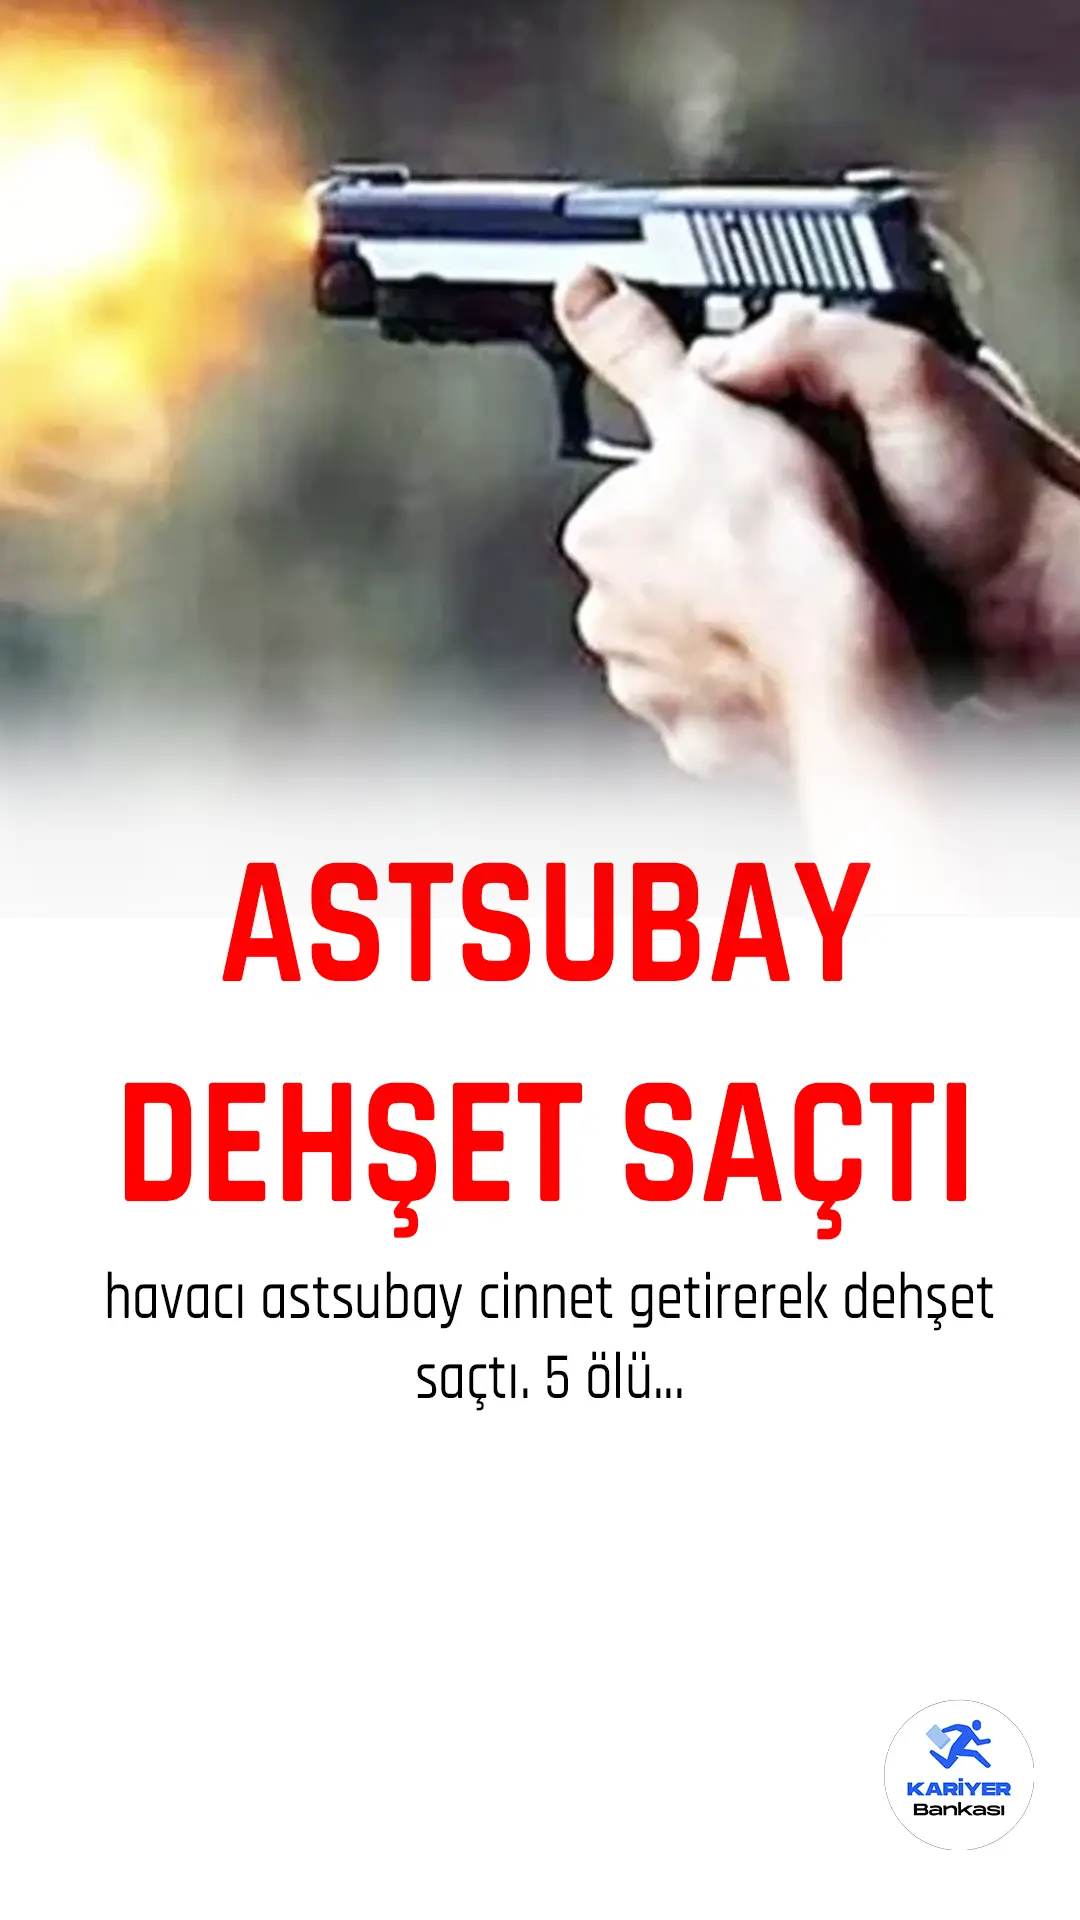 Ankara'da Astsubay dehşet saçtı 5 ölü.